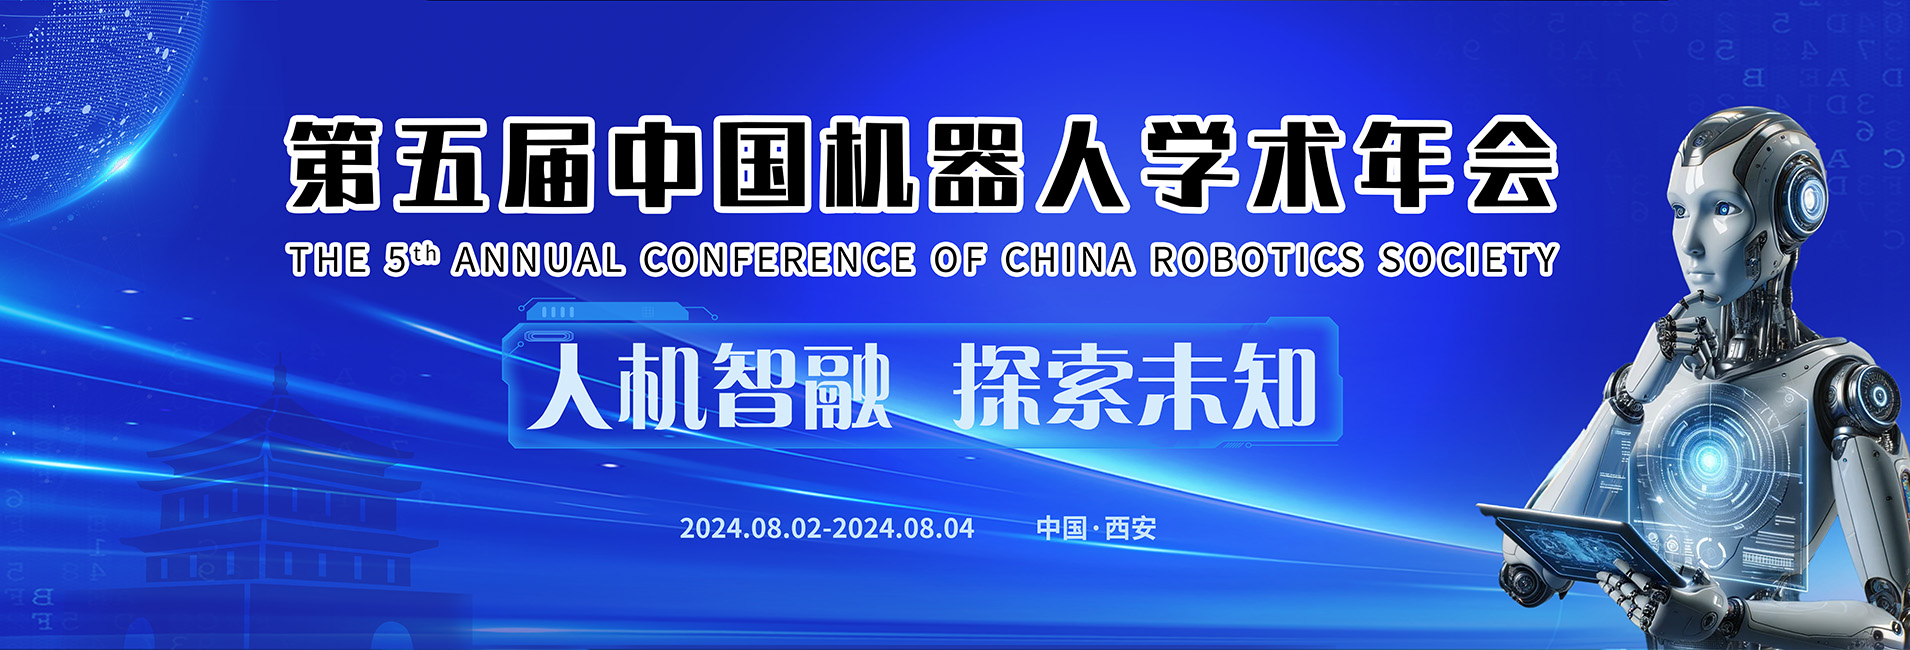 第五届中国机器人学术年会网站